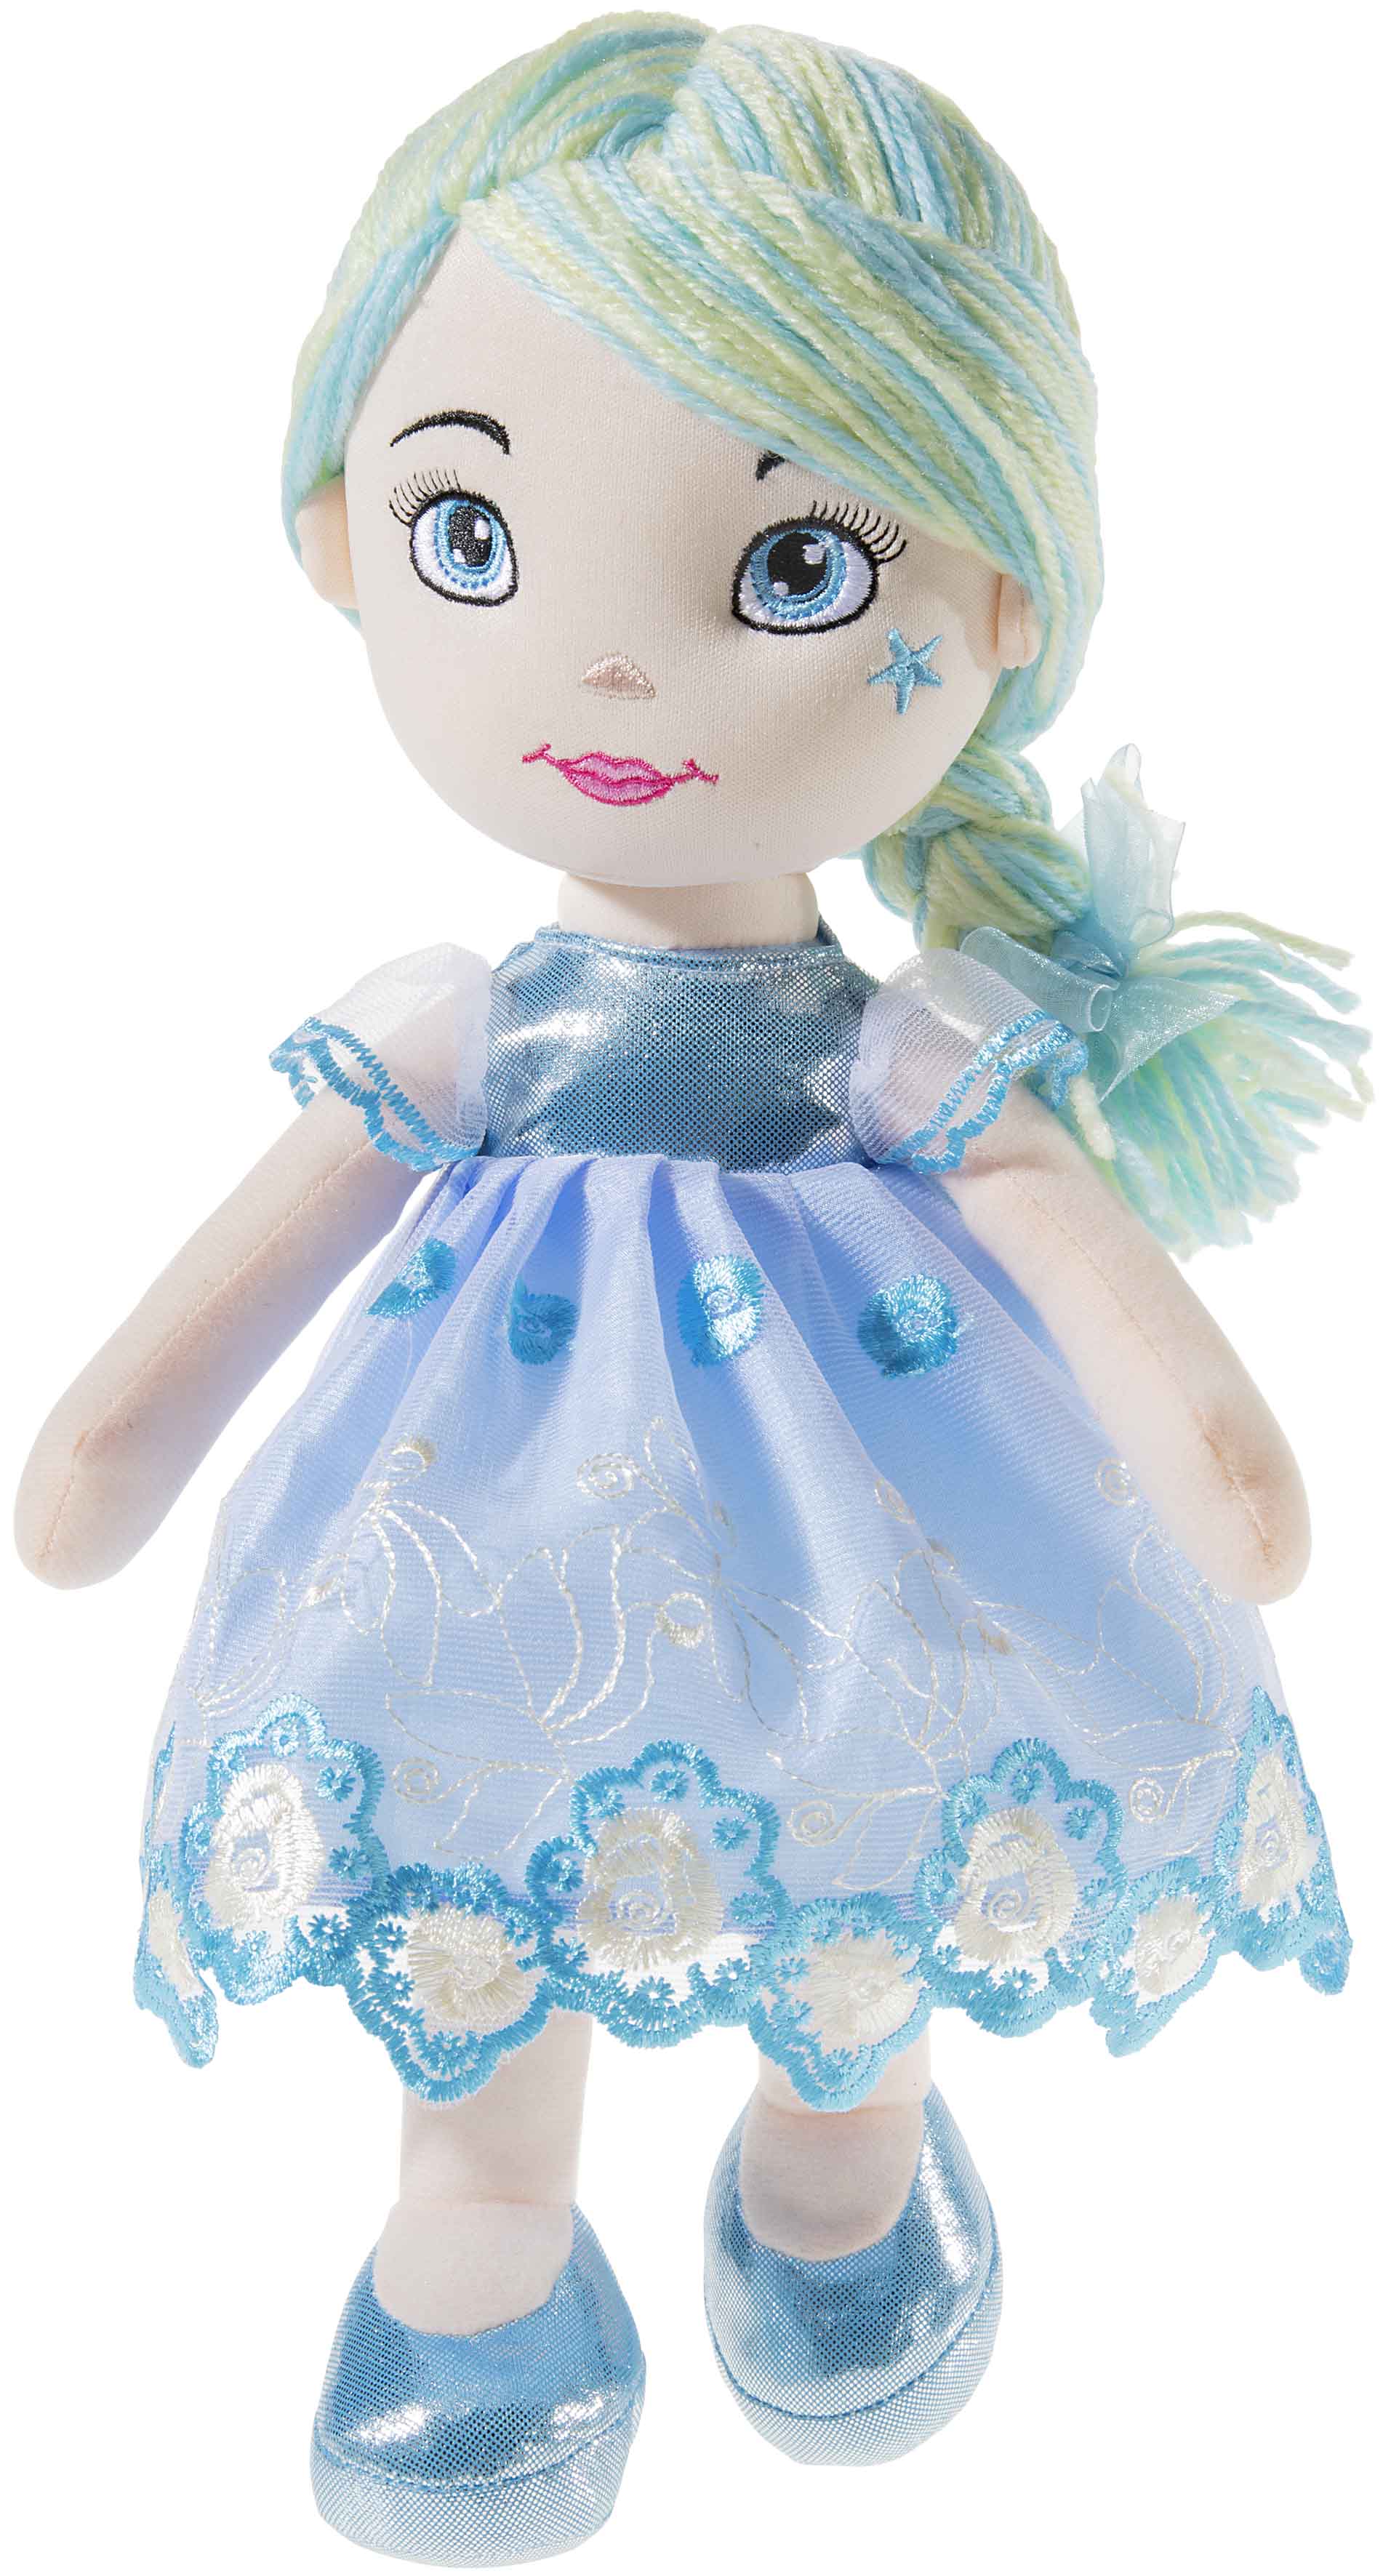 Heunec Bella-Azurri in 35cm aus der Bambola Dolce Serie mit blau-weißen Haaren